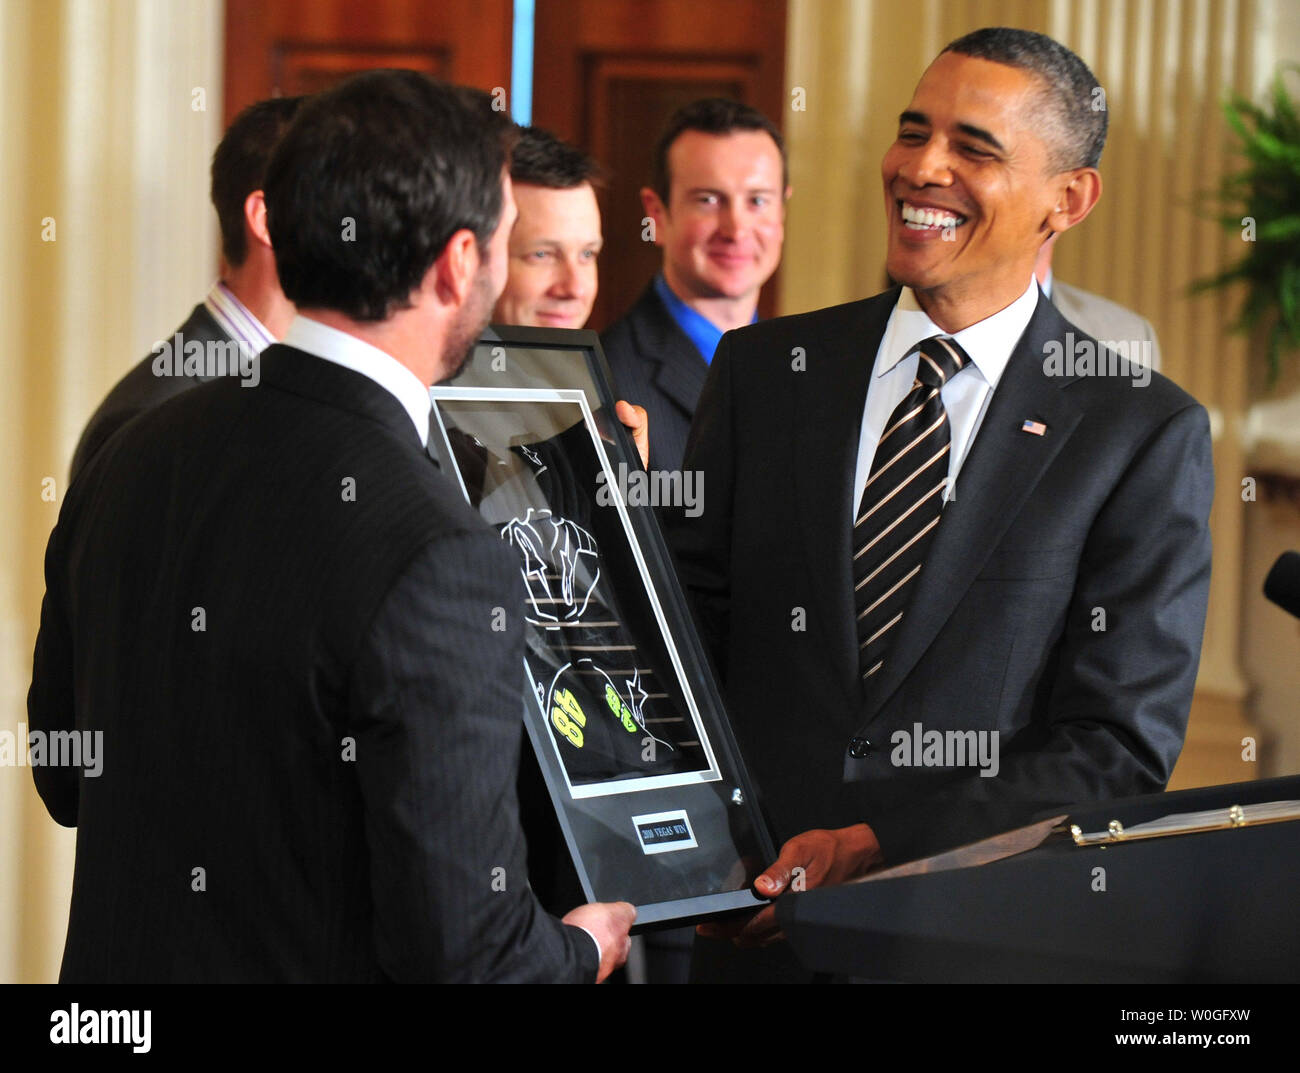 Präsident Barack Obama erhält ein paar Racing Handschuhe von NASCAR Sprint Cup Champion Jimmie Johnson auf einer Veranstaltung, wo Obama Johnson's Meisterschaft geehrt, im Weißen Haus in Washington, D.C. am 7. September 2011. UPI/Kevin Dietsch Stockfoto